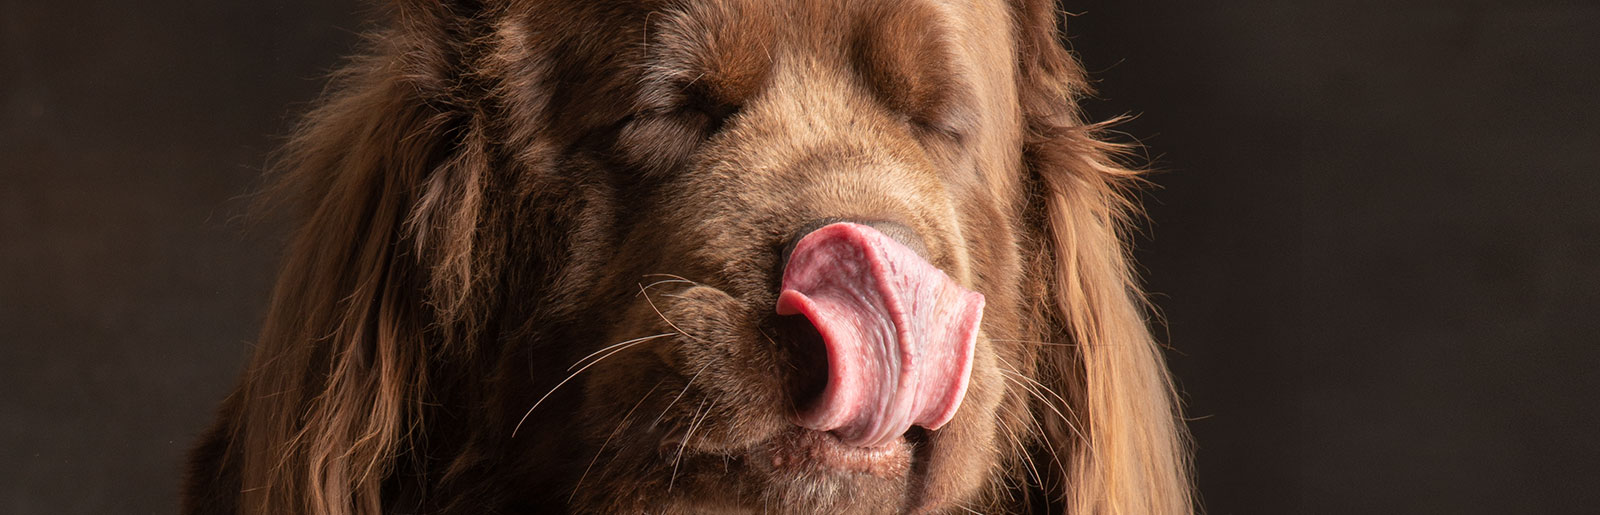 Hunde schmecken, welche Nahrungsmittel verträglich, unverträglich oder gar giftig sind